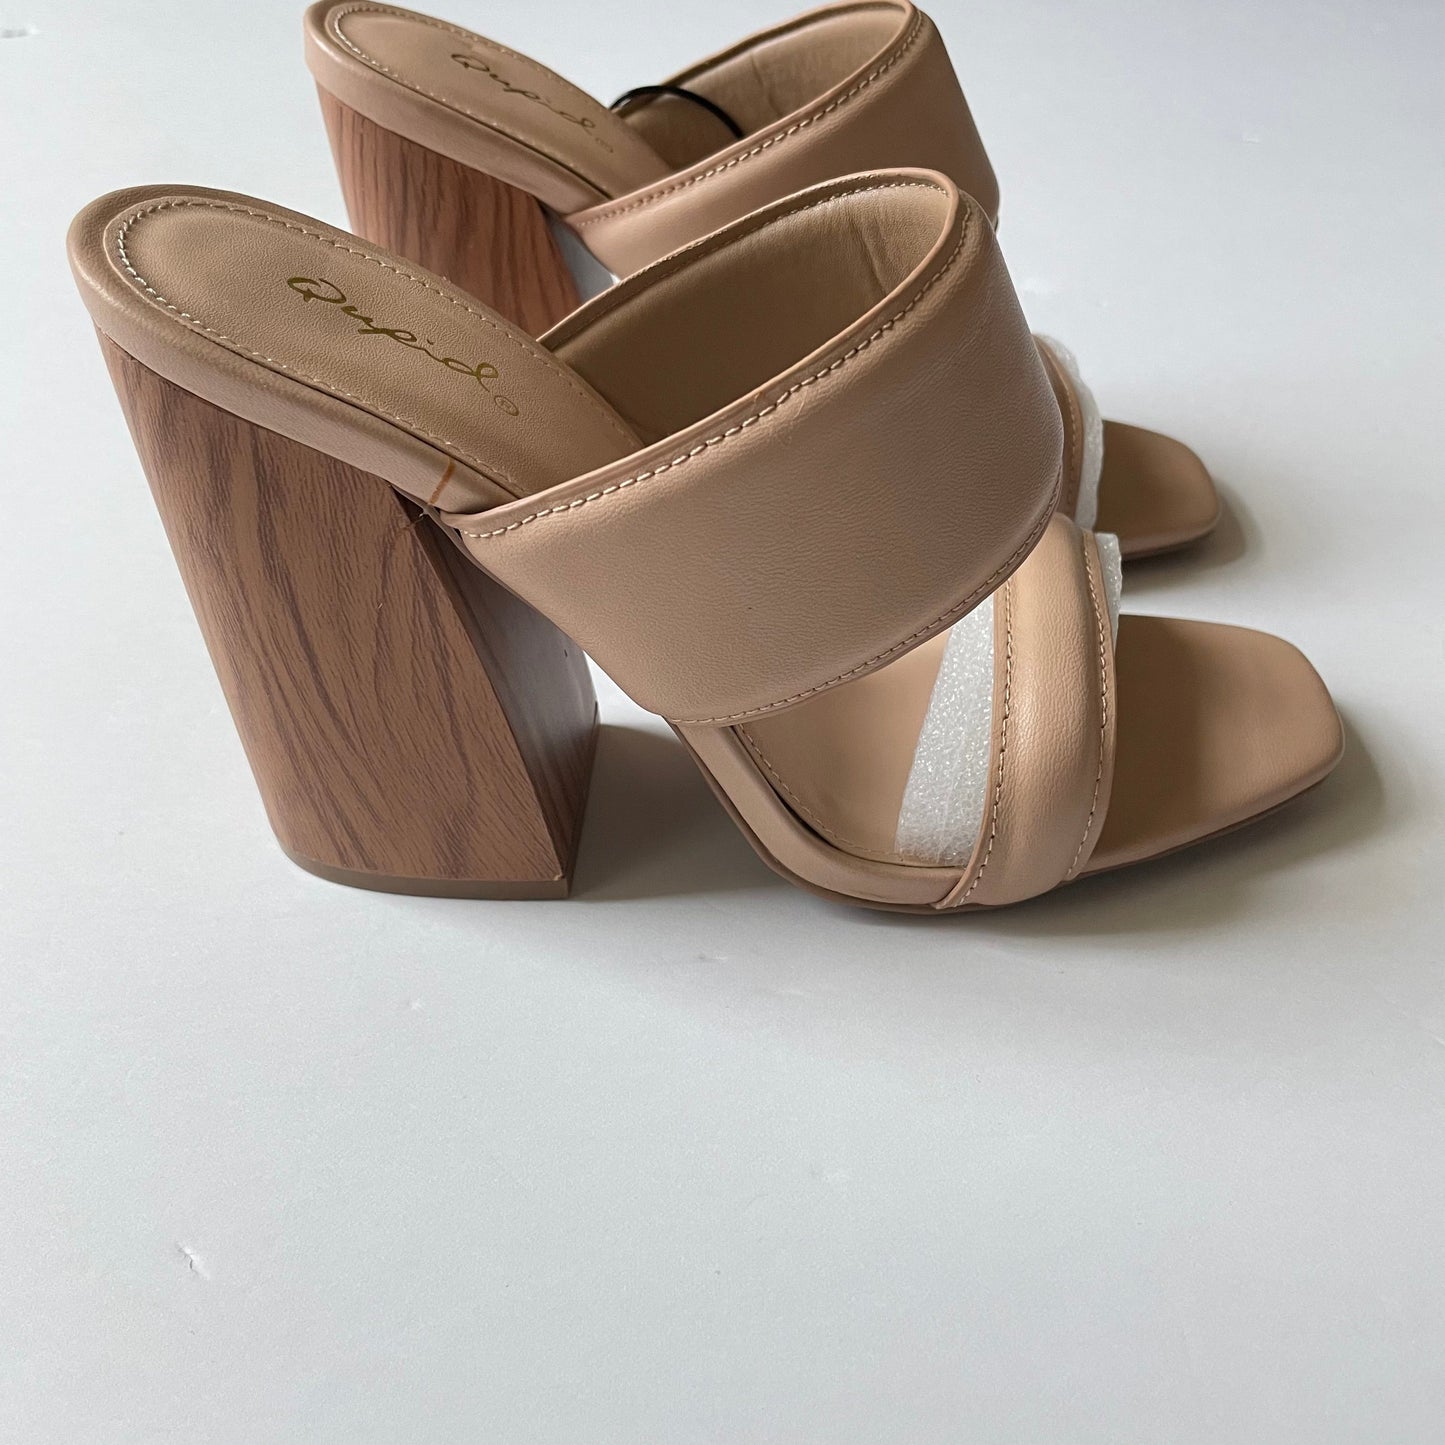 Tan Shoes Heels Block Qupid, Size 6.5